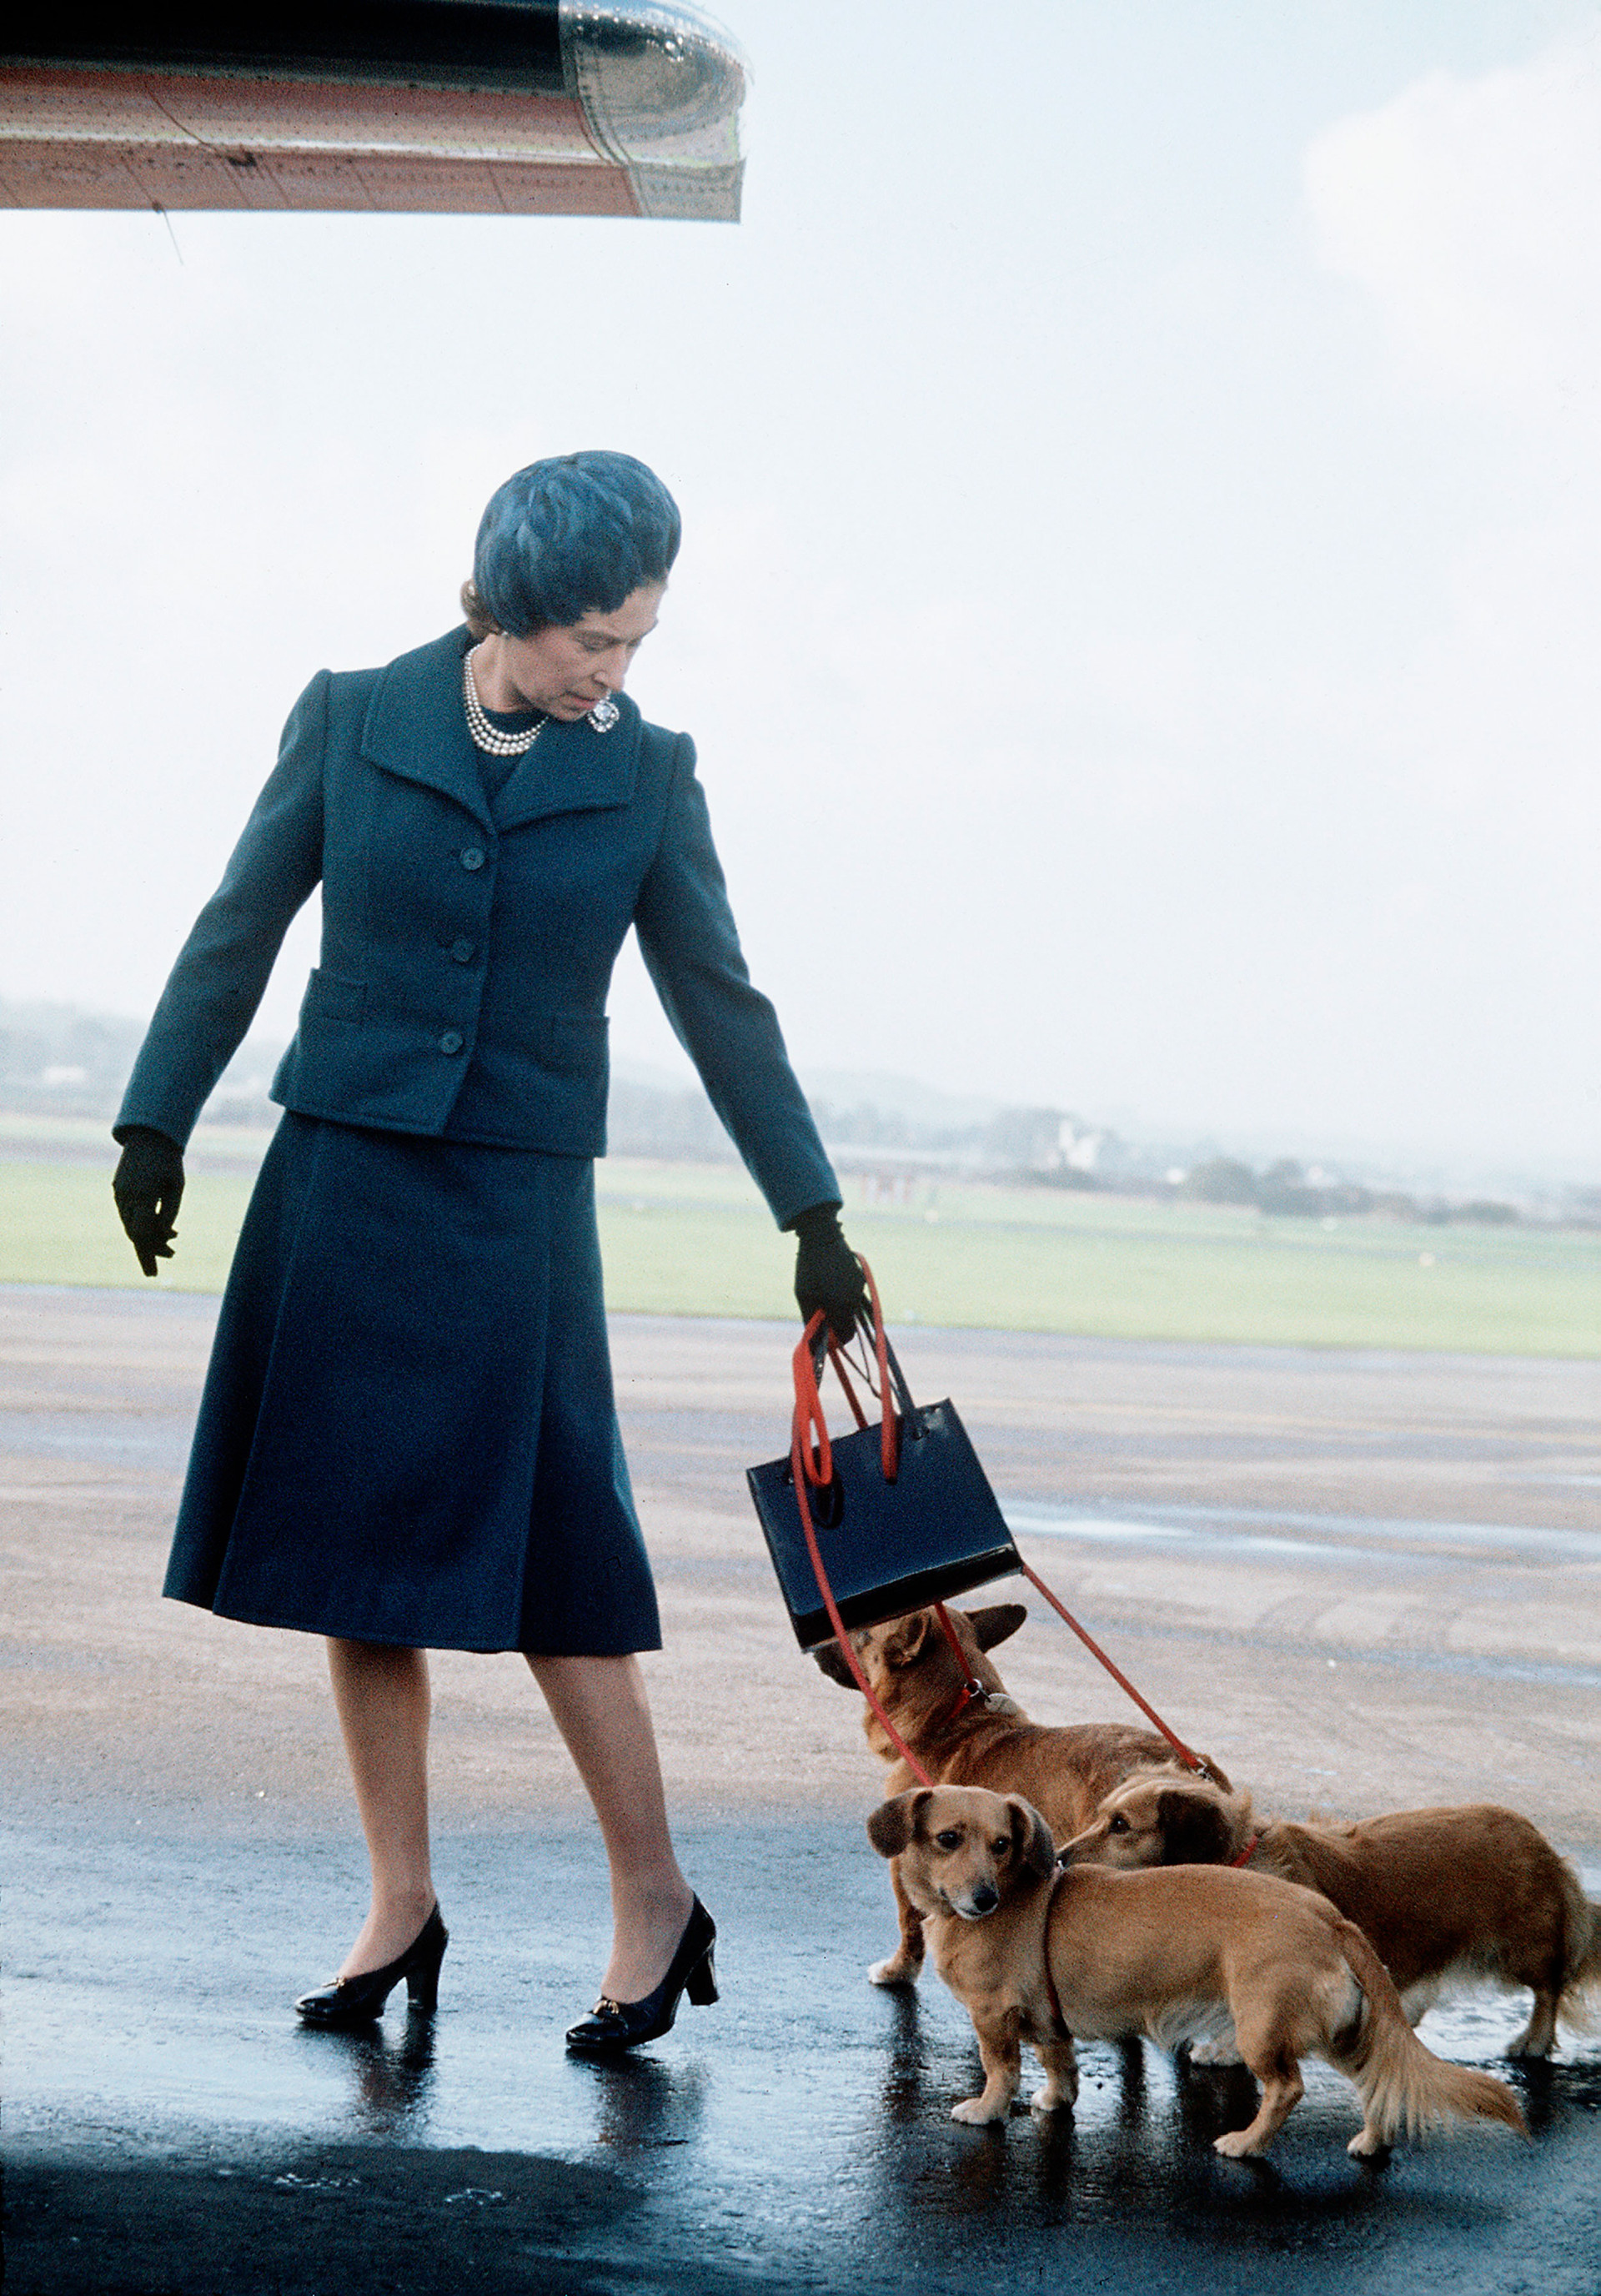 Nữ hoàng mang theo chiếc túi xách Launer khi đến thăm Balmoral, Scotland năm 1974. Ảnh: Getty Images.